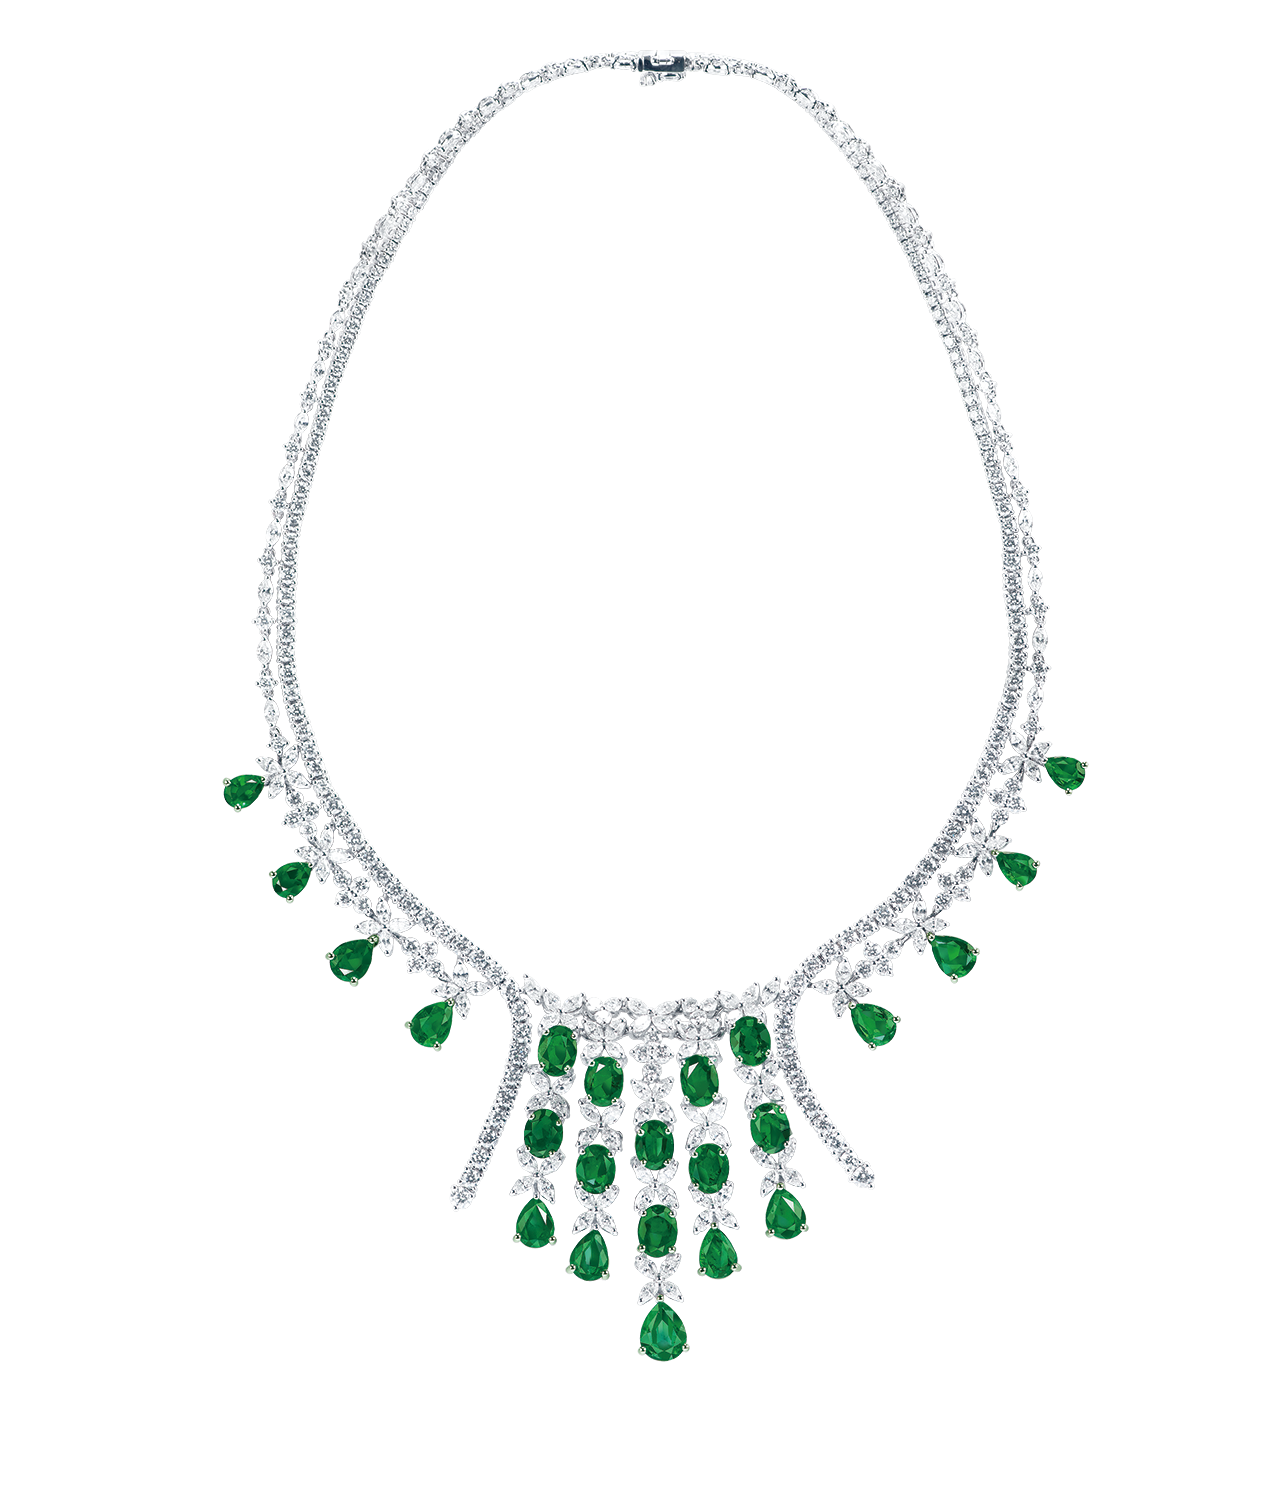 22.65克拉 祖母綠鑽石套鍊
Emerald and Diamond Necklace